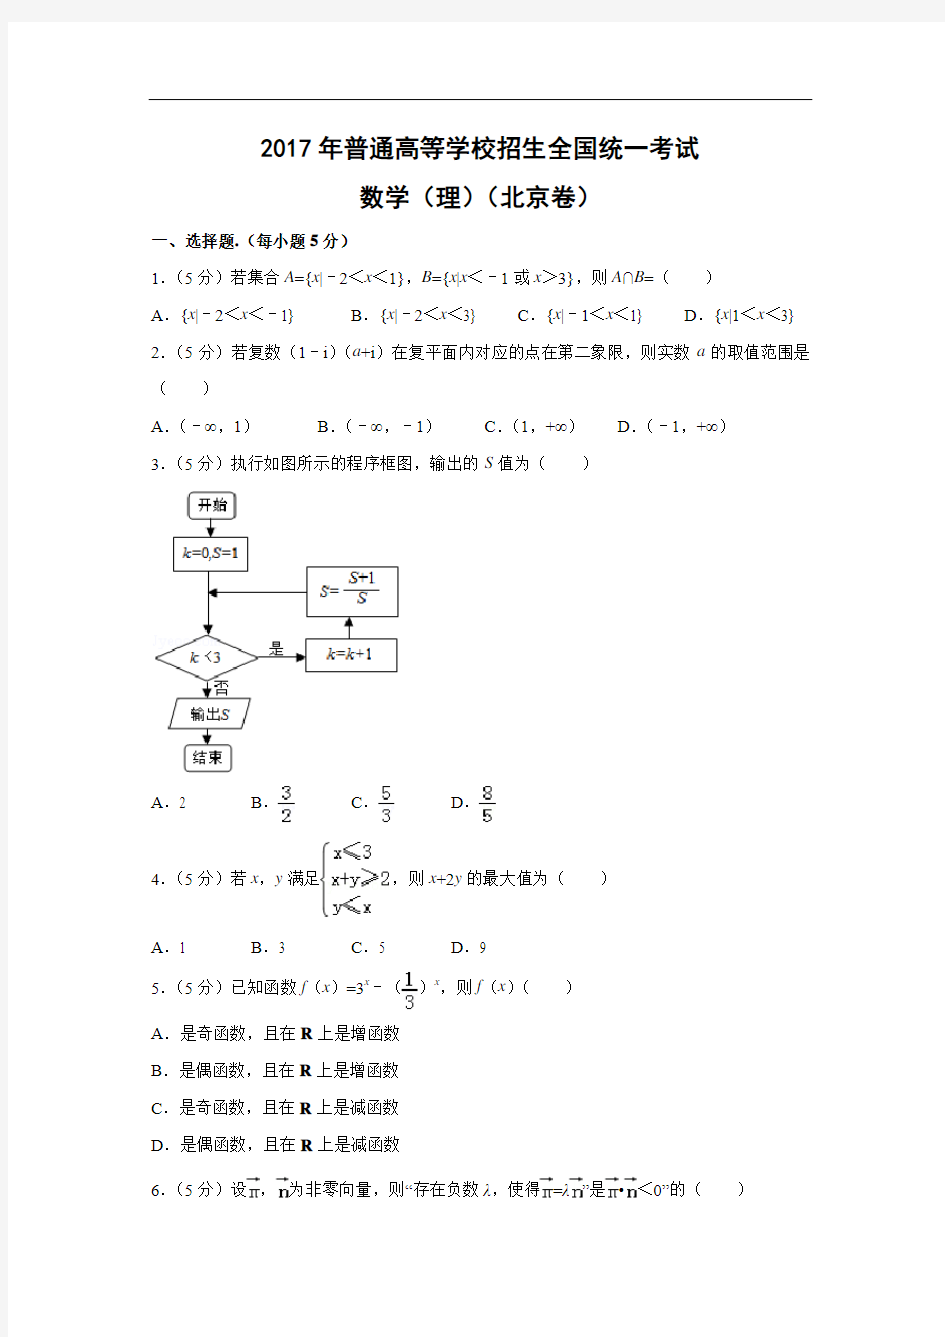 【数学】2017年高考真题——北京卷(理)(解析版)